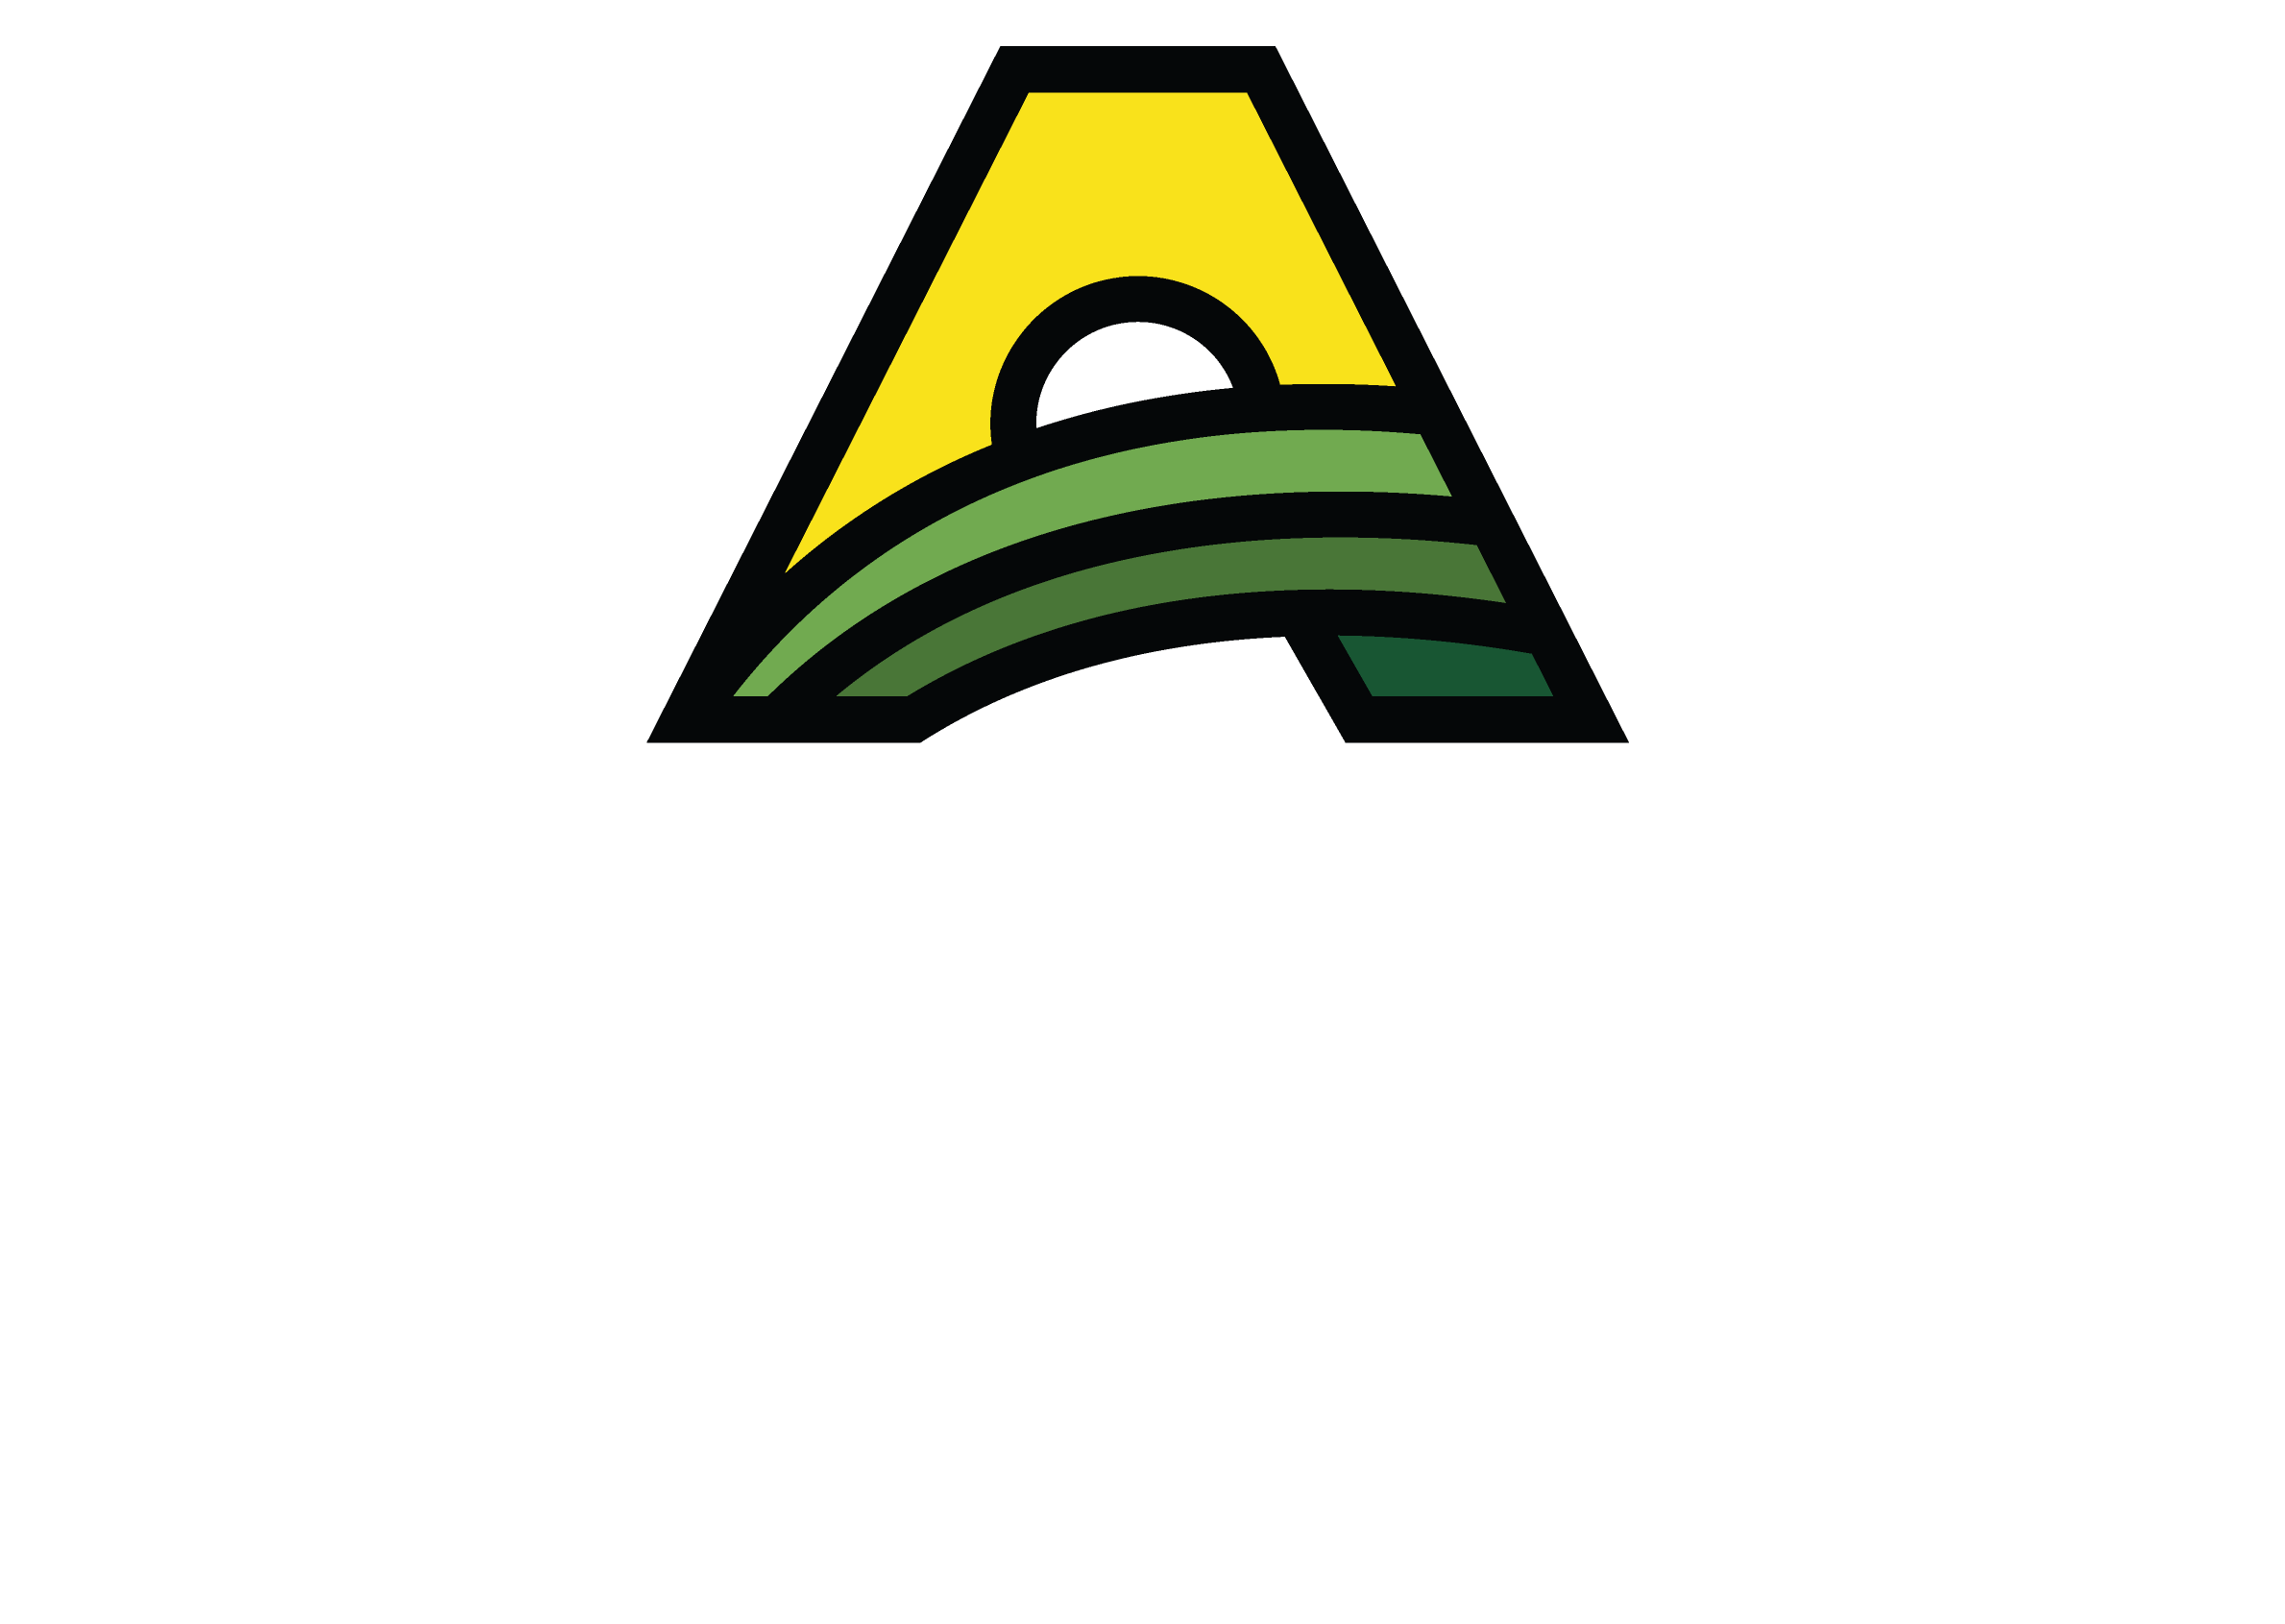 AKRS Champions Club